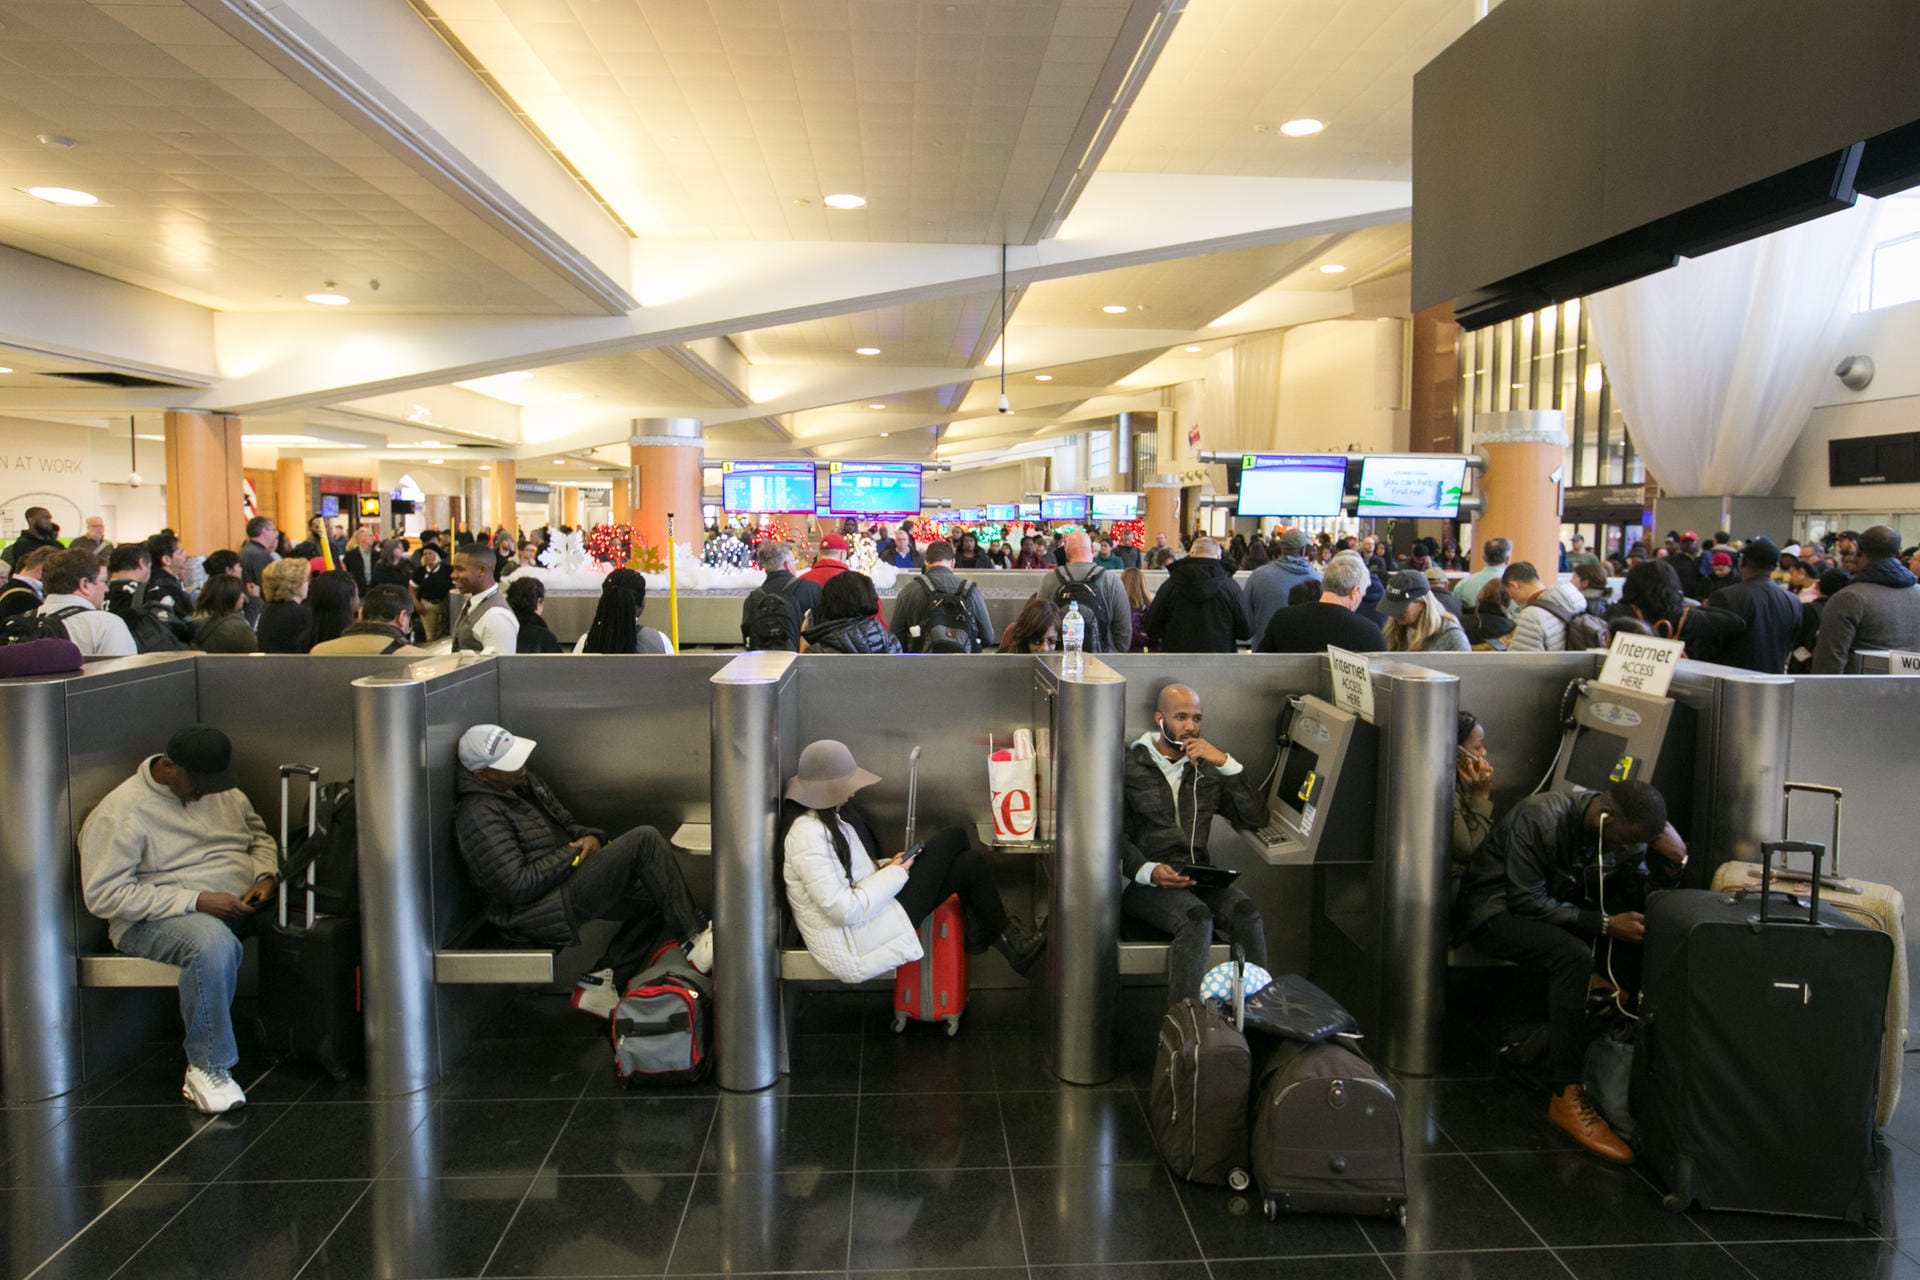 Der Flughafen mit den meisten Passagieren ist der Flughafen Atlanta. Und dieser hat sogar einen Weltrekord gebrochen: Über einhundert Millionen Menschen wurden hier abgefertigt. Der größte Flughafen der Welt wird oft als Zwischenstopp für Inlandsflüge genutzt.